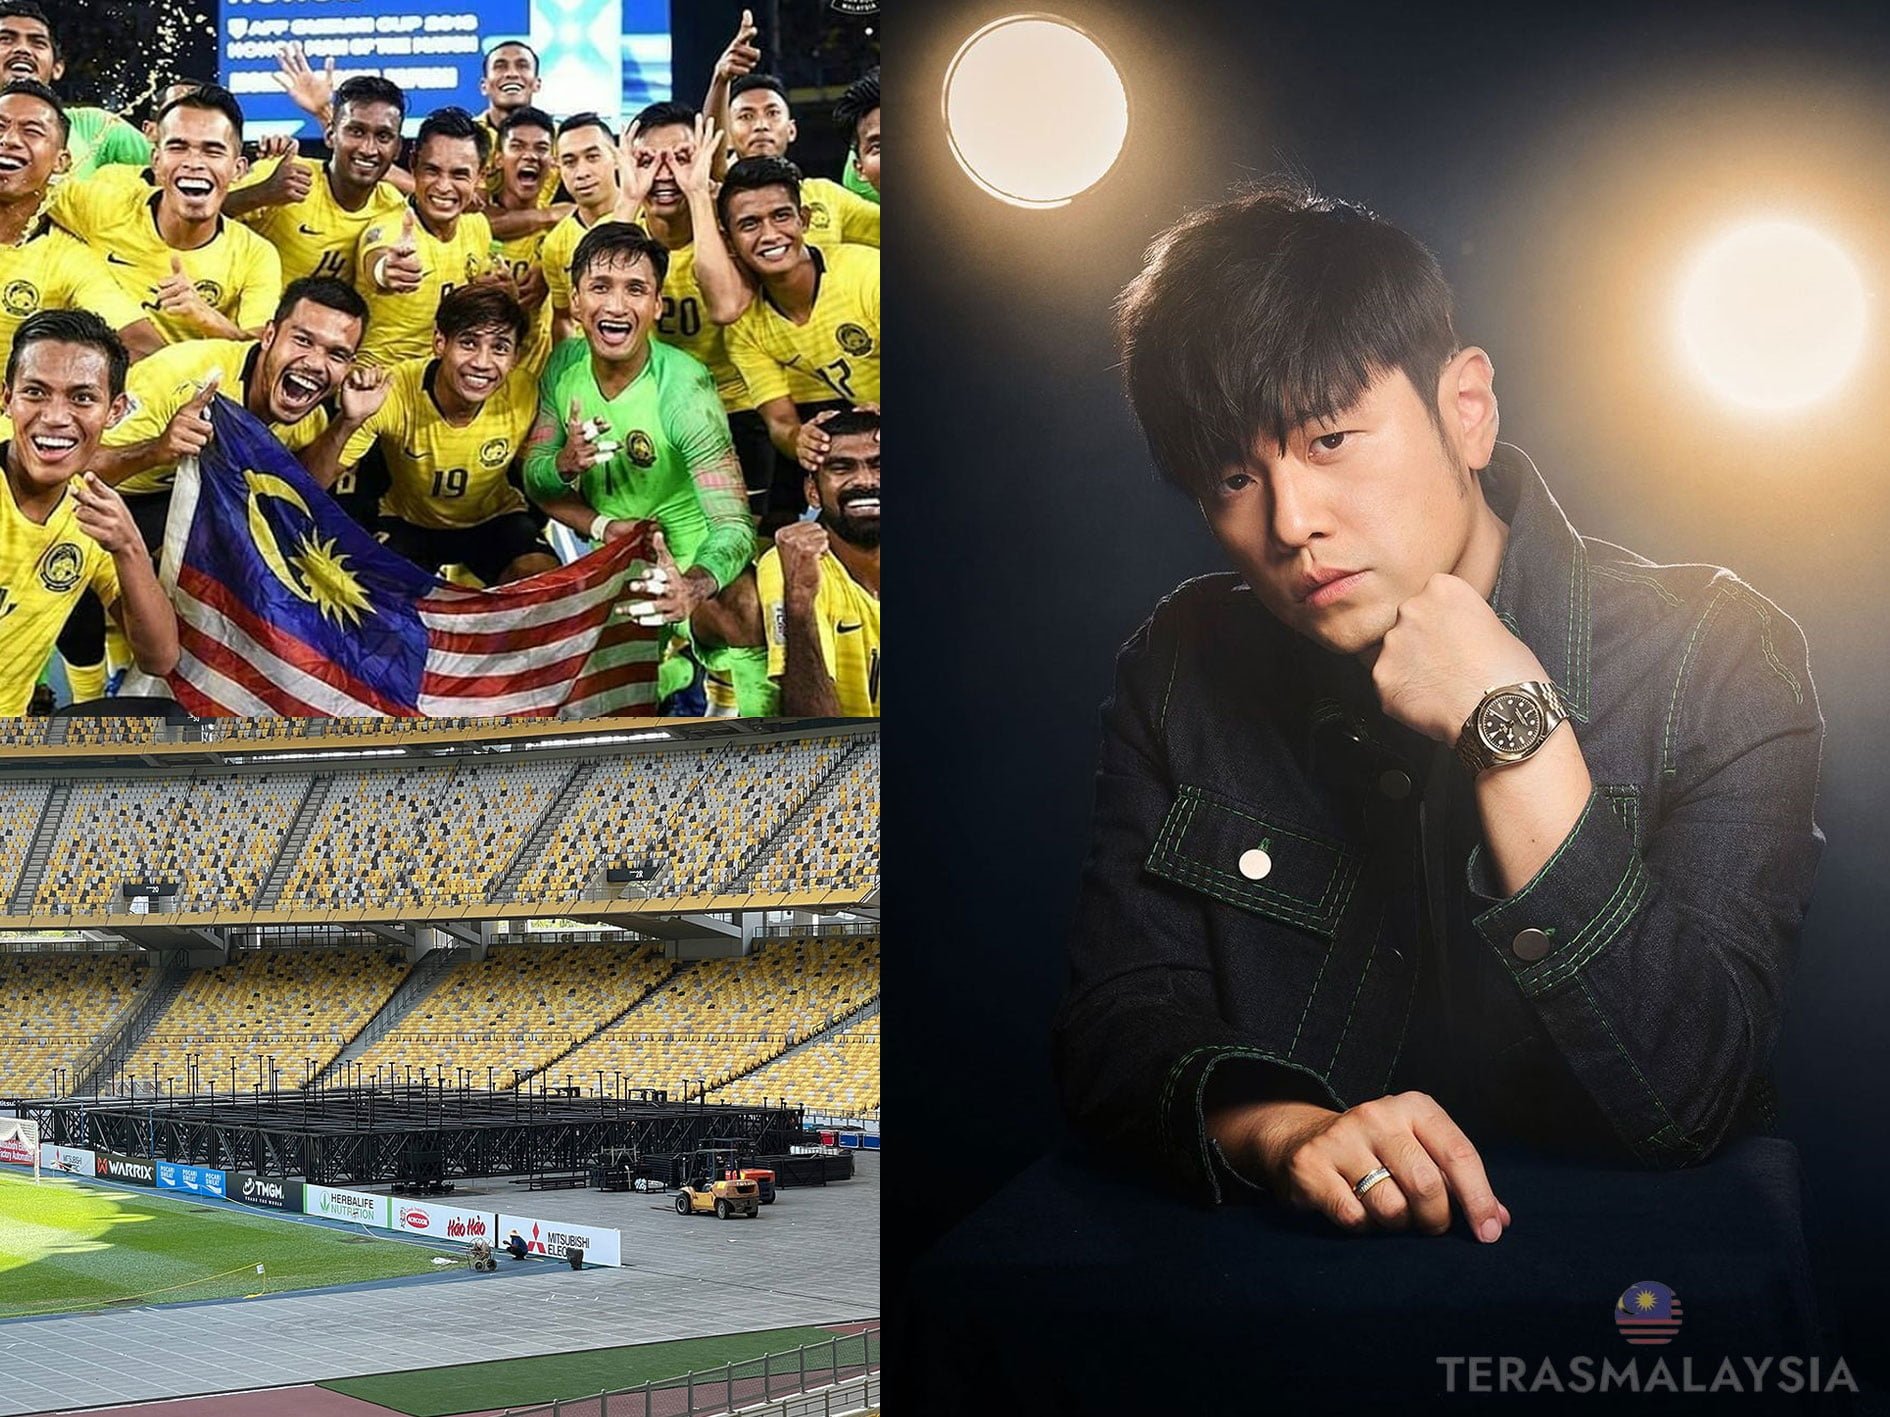 Jay Chou Bincang Dengan Pihak Pengurus Stadium Untuk Tangguh Konsert